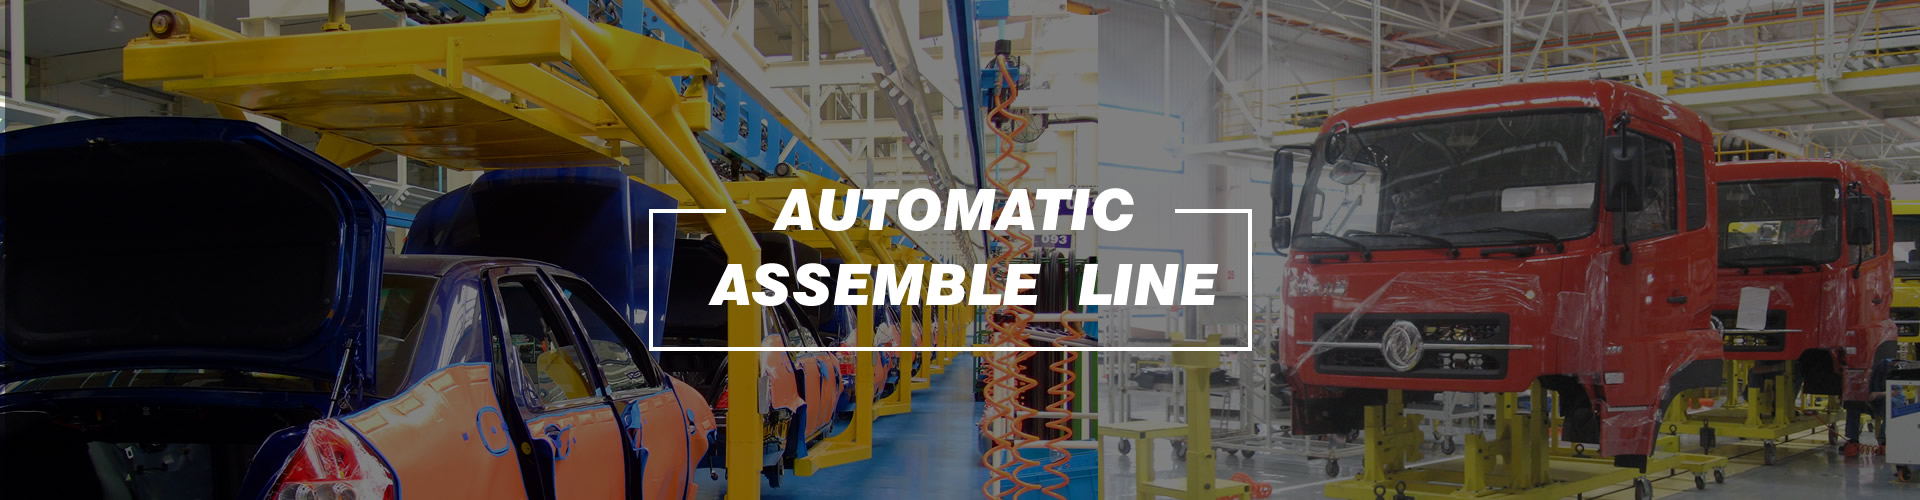 automotive assembly line